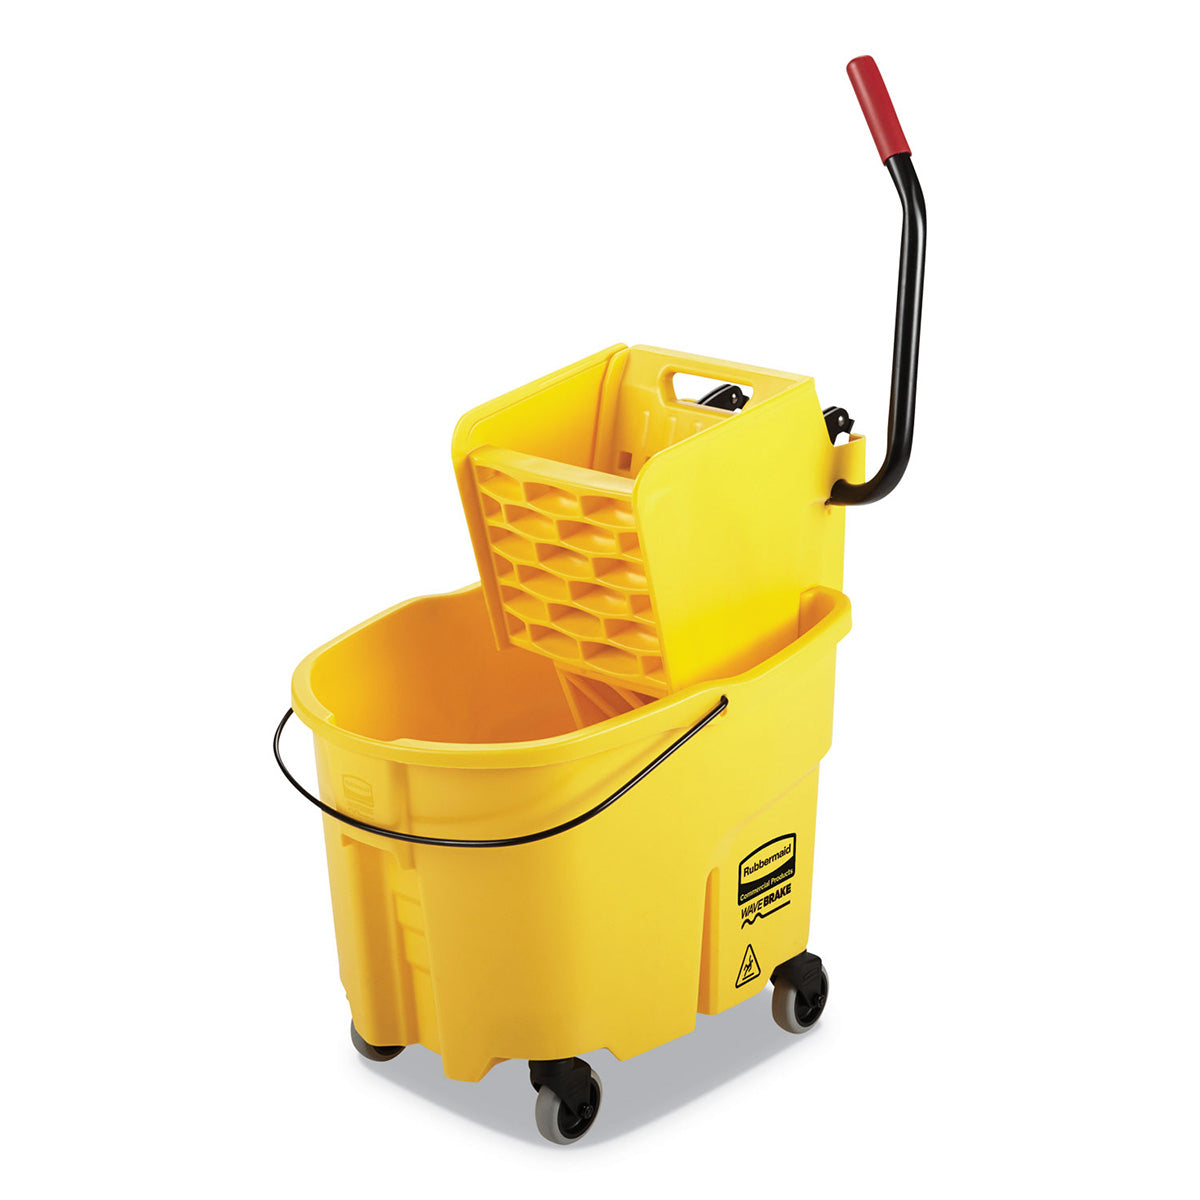 https://www.cleanfreak.com/cdn/shop/products/rubbermaid-wavebrake-35-qt-mop-bucket-wringer_1200x1200.jpg?v=1666796167